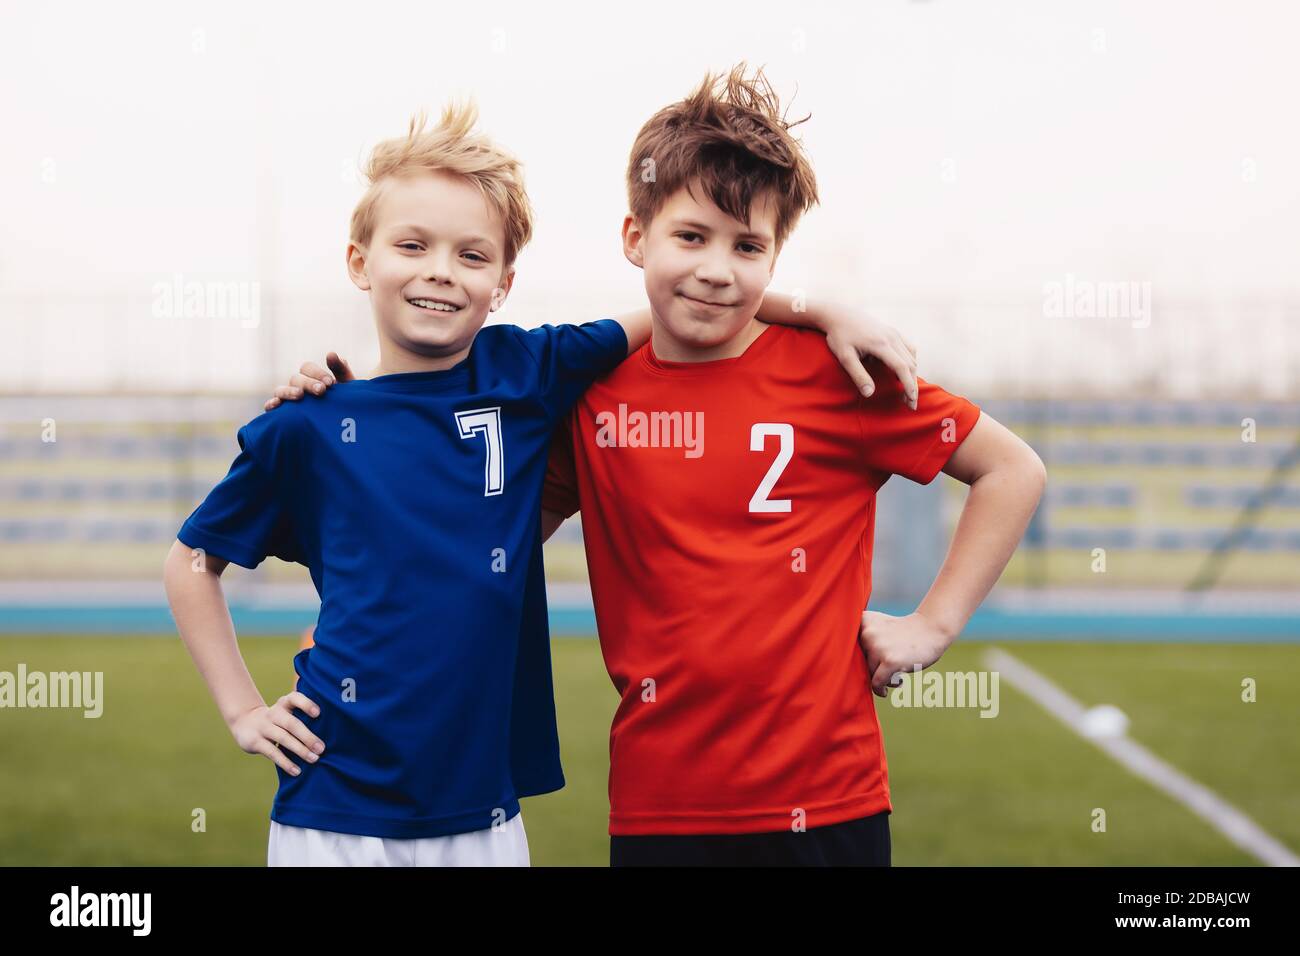 Dos chicos felices aire libre en ropa deportiva. Niños sonriendo a cámara. Niños de pie en un campo de césped deportivo. Educación deportiva para niños Fotografía de stock -